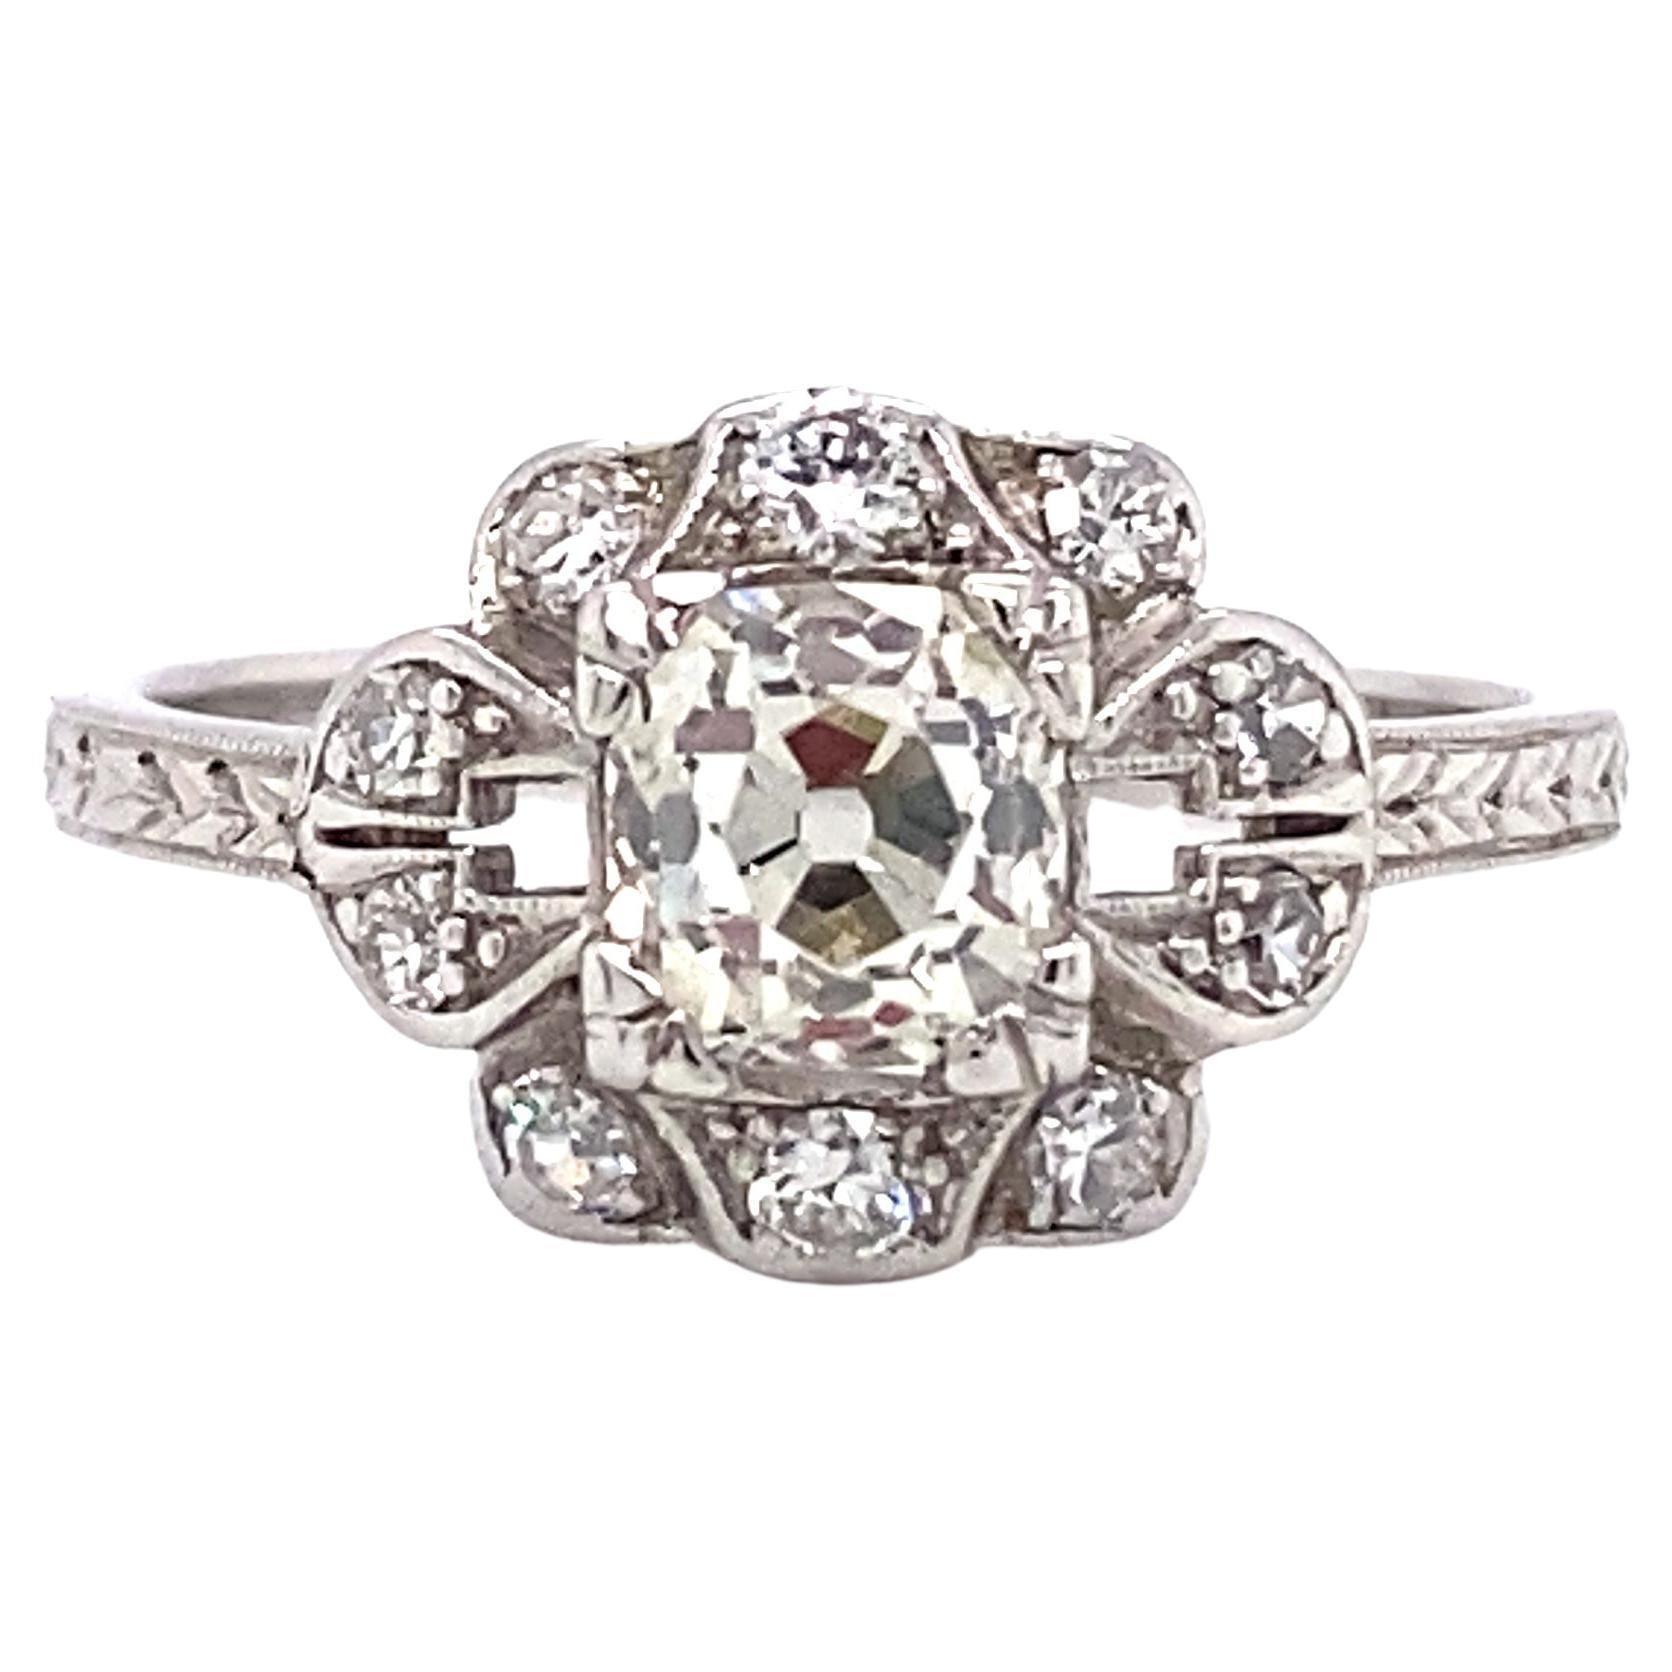 Circa 1920s Art Deco 0.80 Carat Diamond Engagement Ring in Platinum